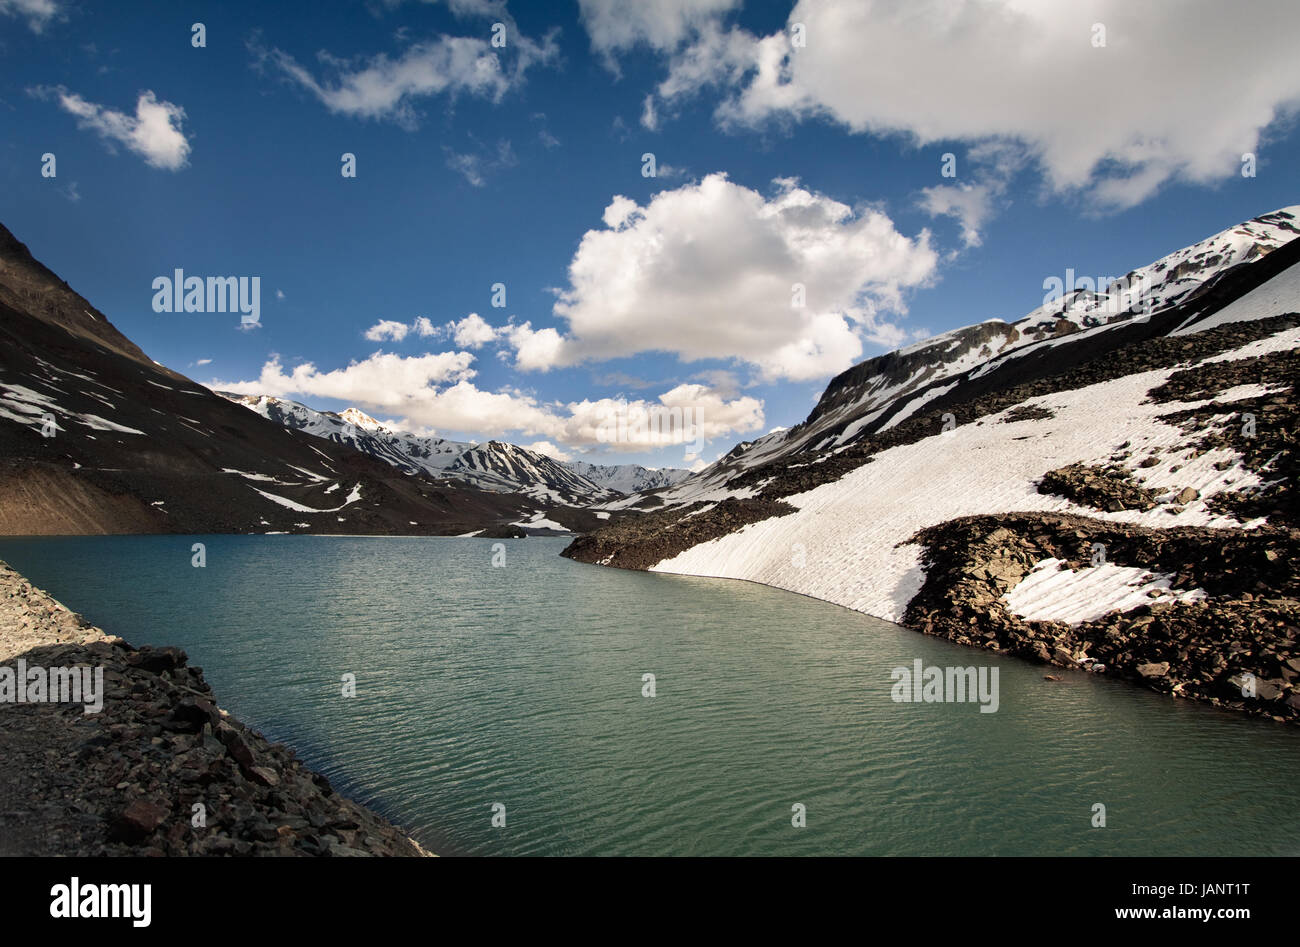 Bella drammatico paesaggio di neve montagne e lago ad alta altitudine nel duro ambiente dell'Himalaya indiano sulla Manali a Leh road Foto Stock